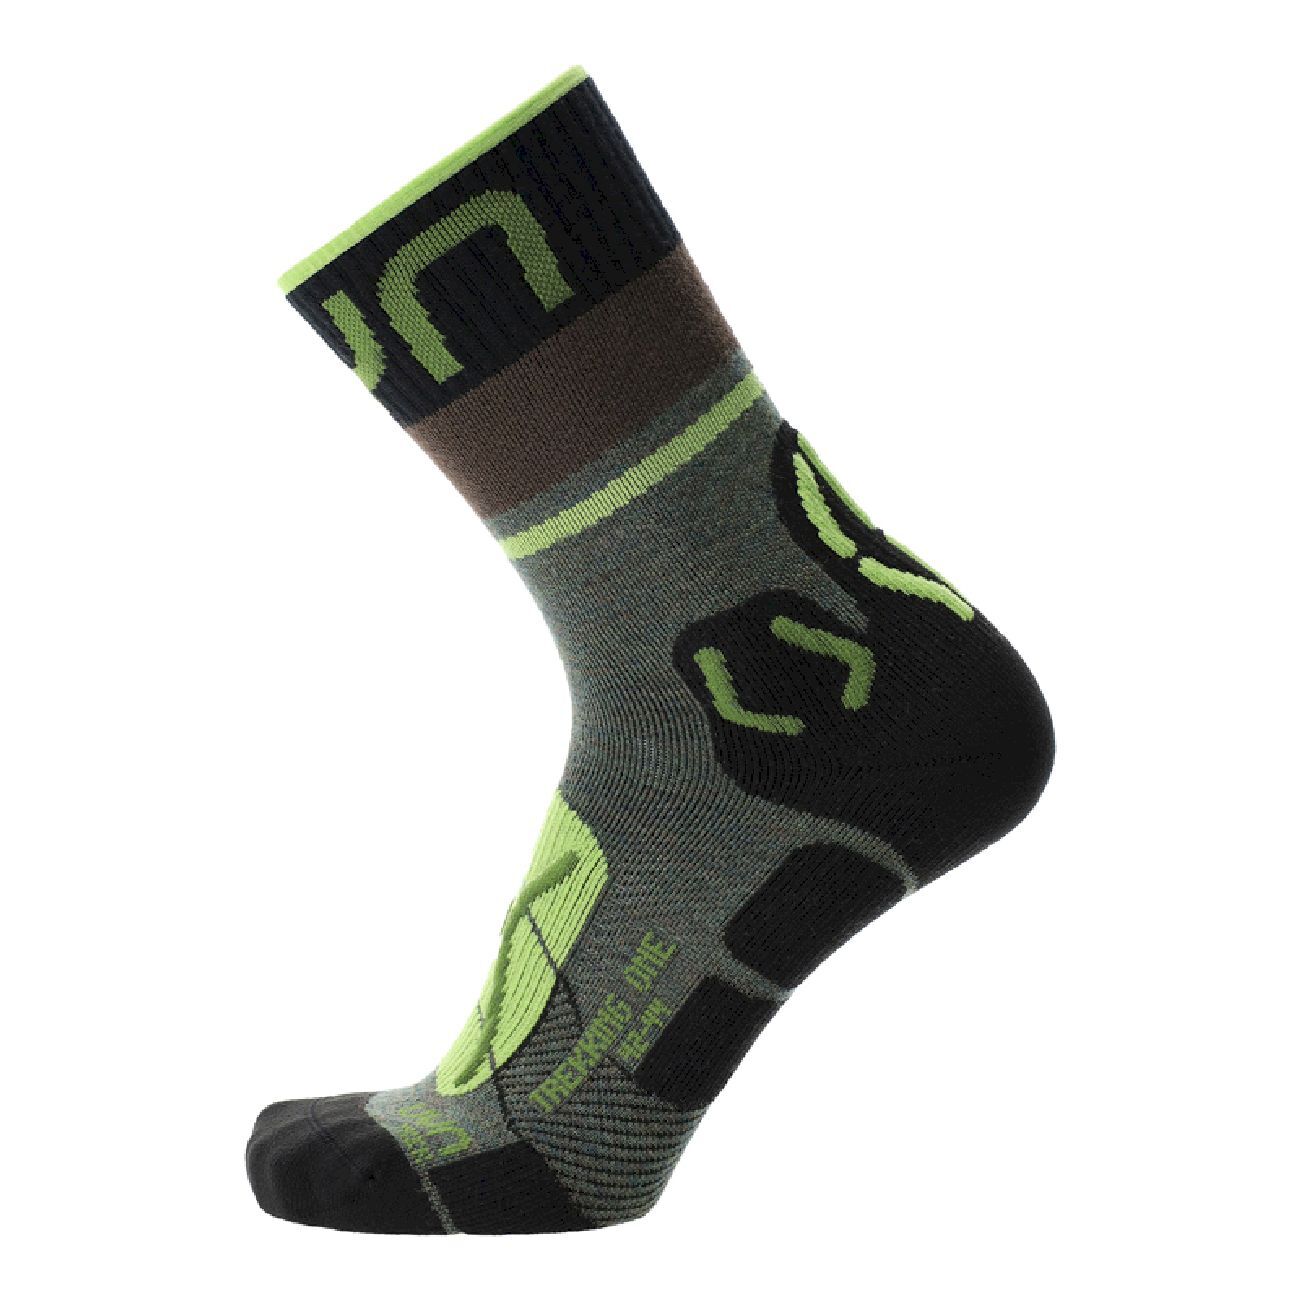 Uyn  Trekking One Merino Socks - Hiking socks - Men's